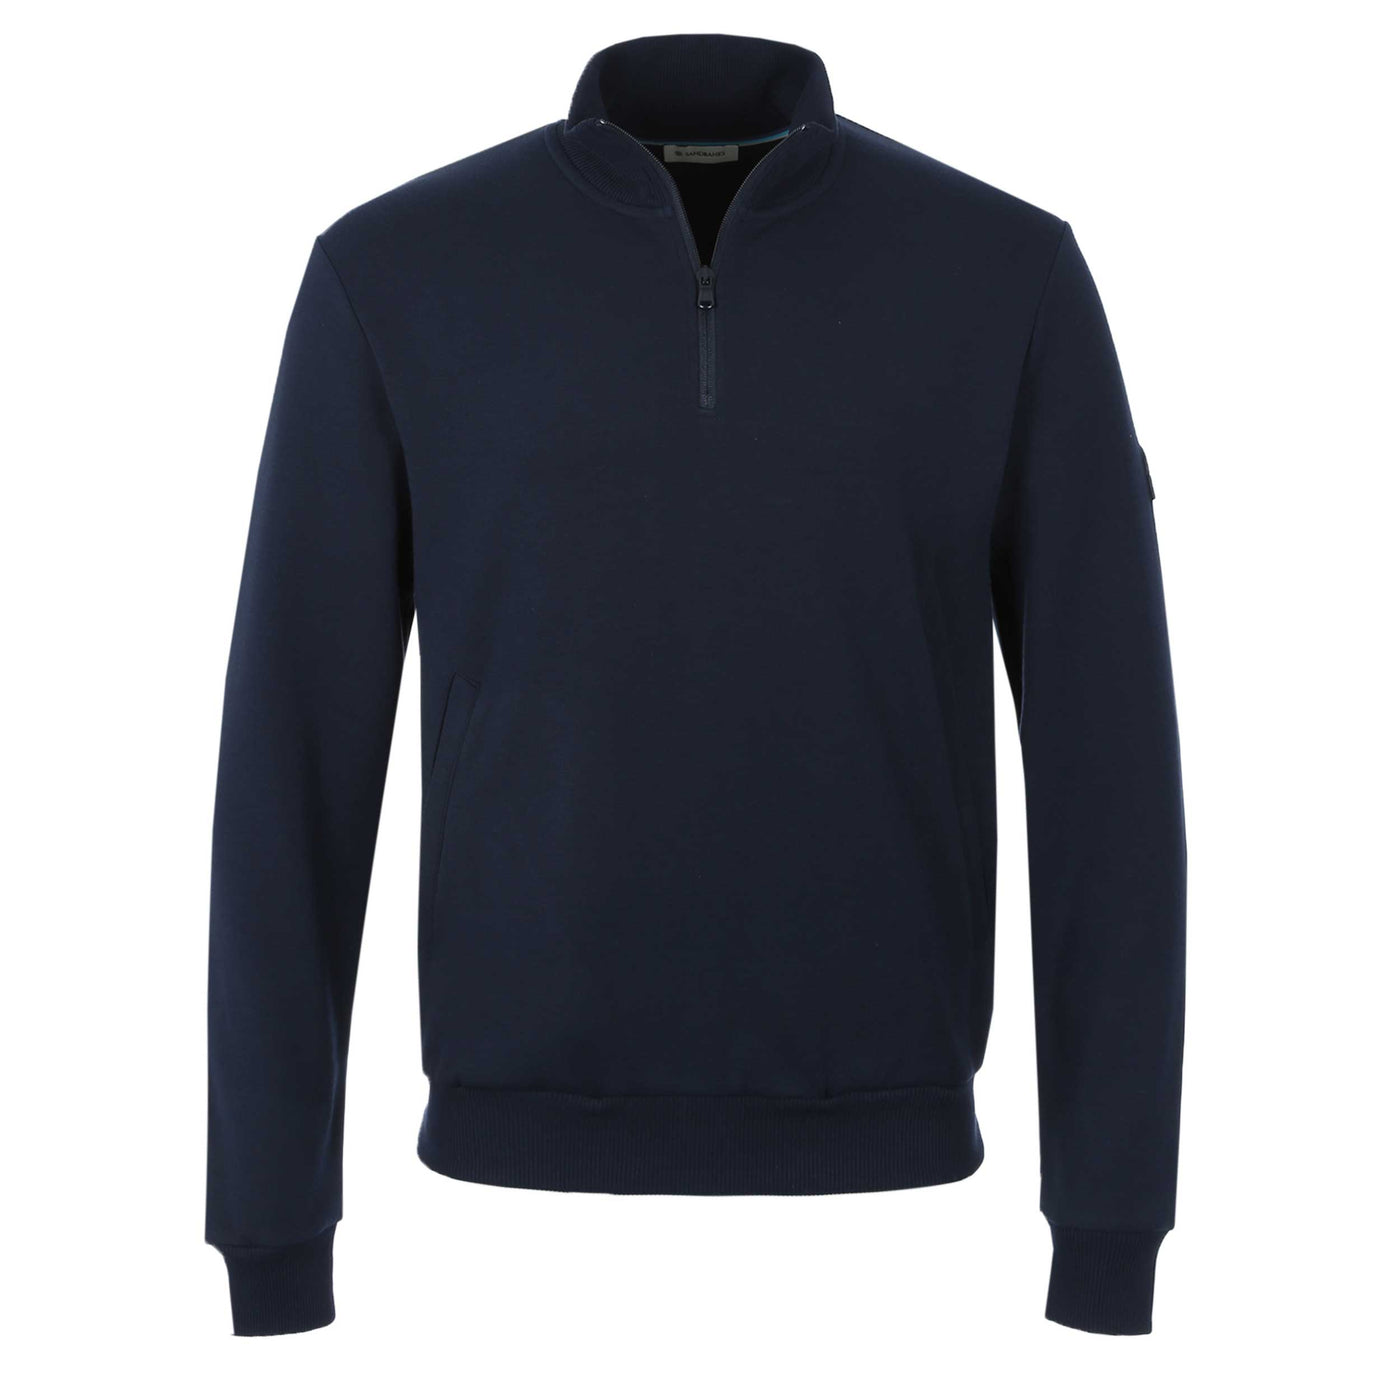 Sandbanks Interlock 1/4 Zip Sweatshirt in Navy